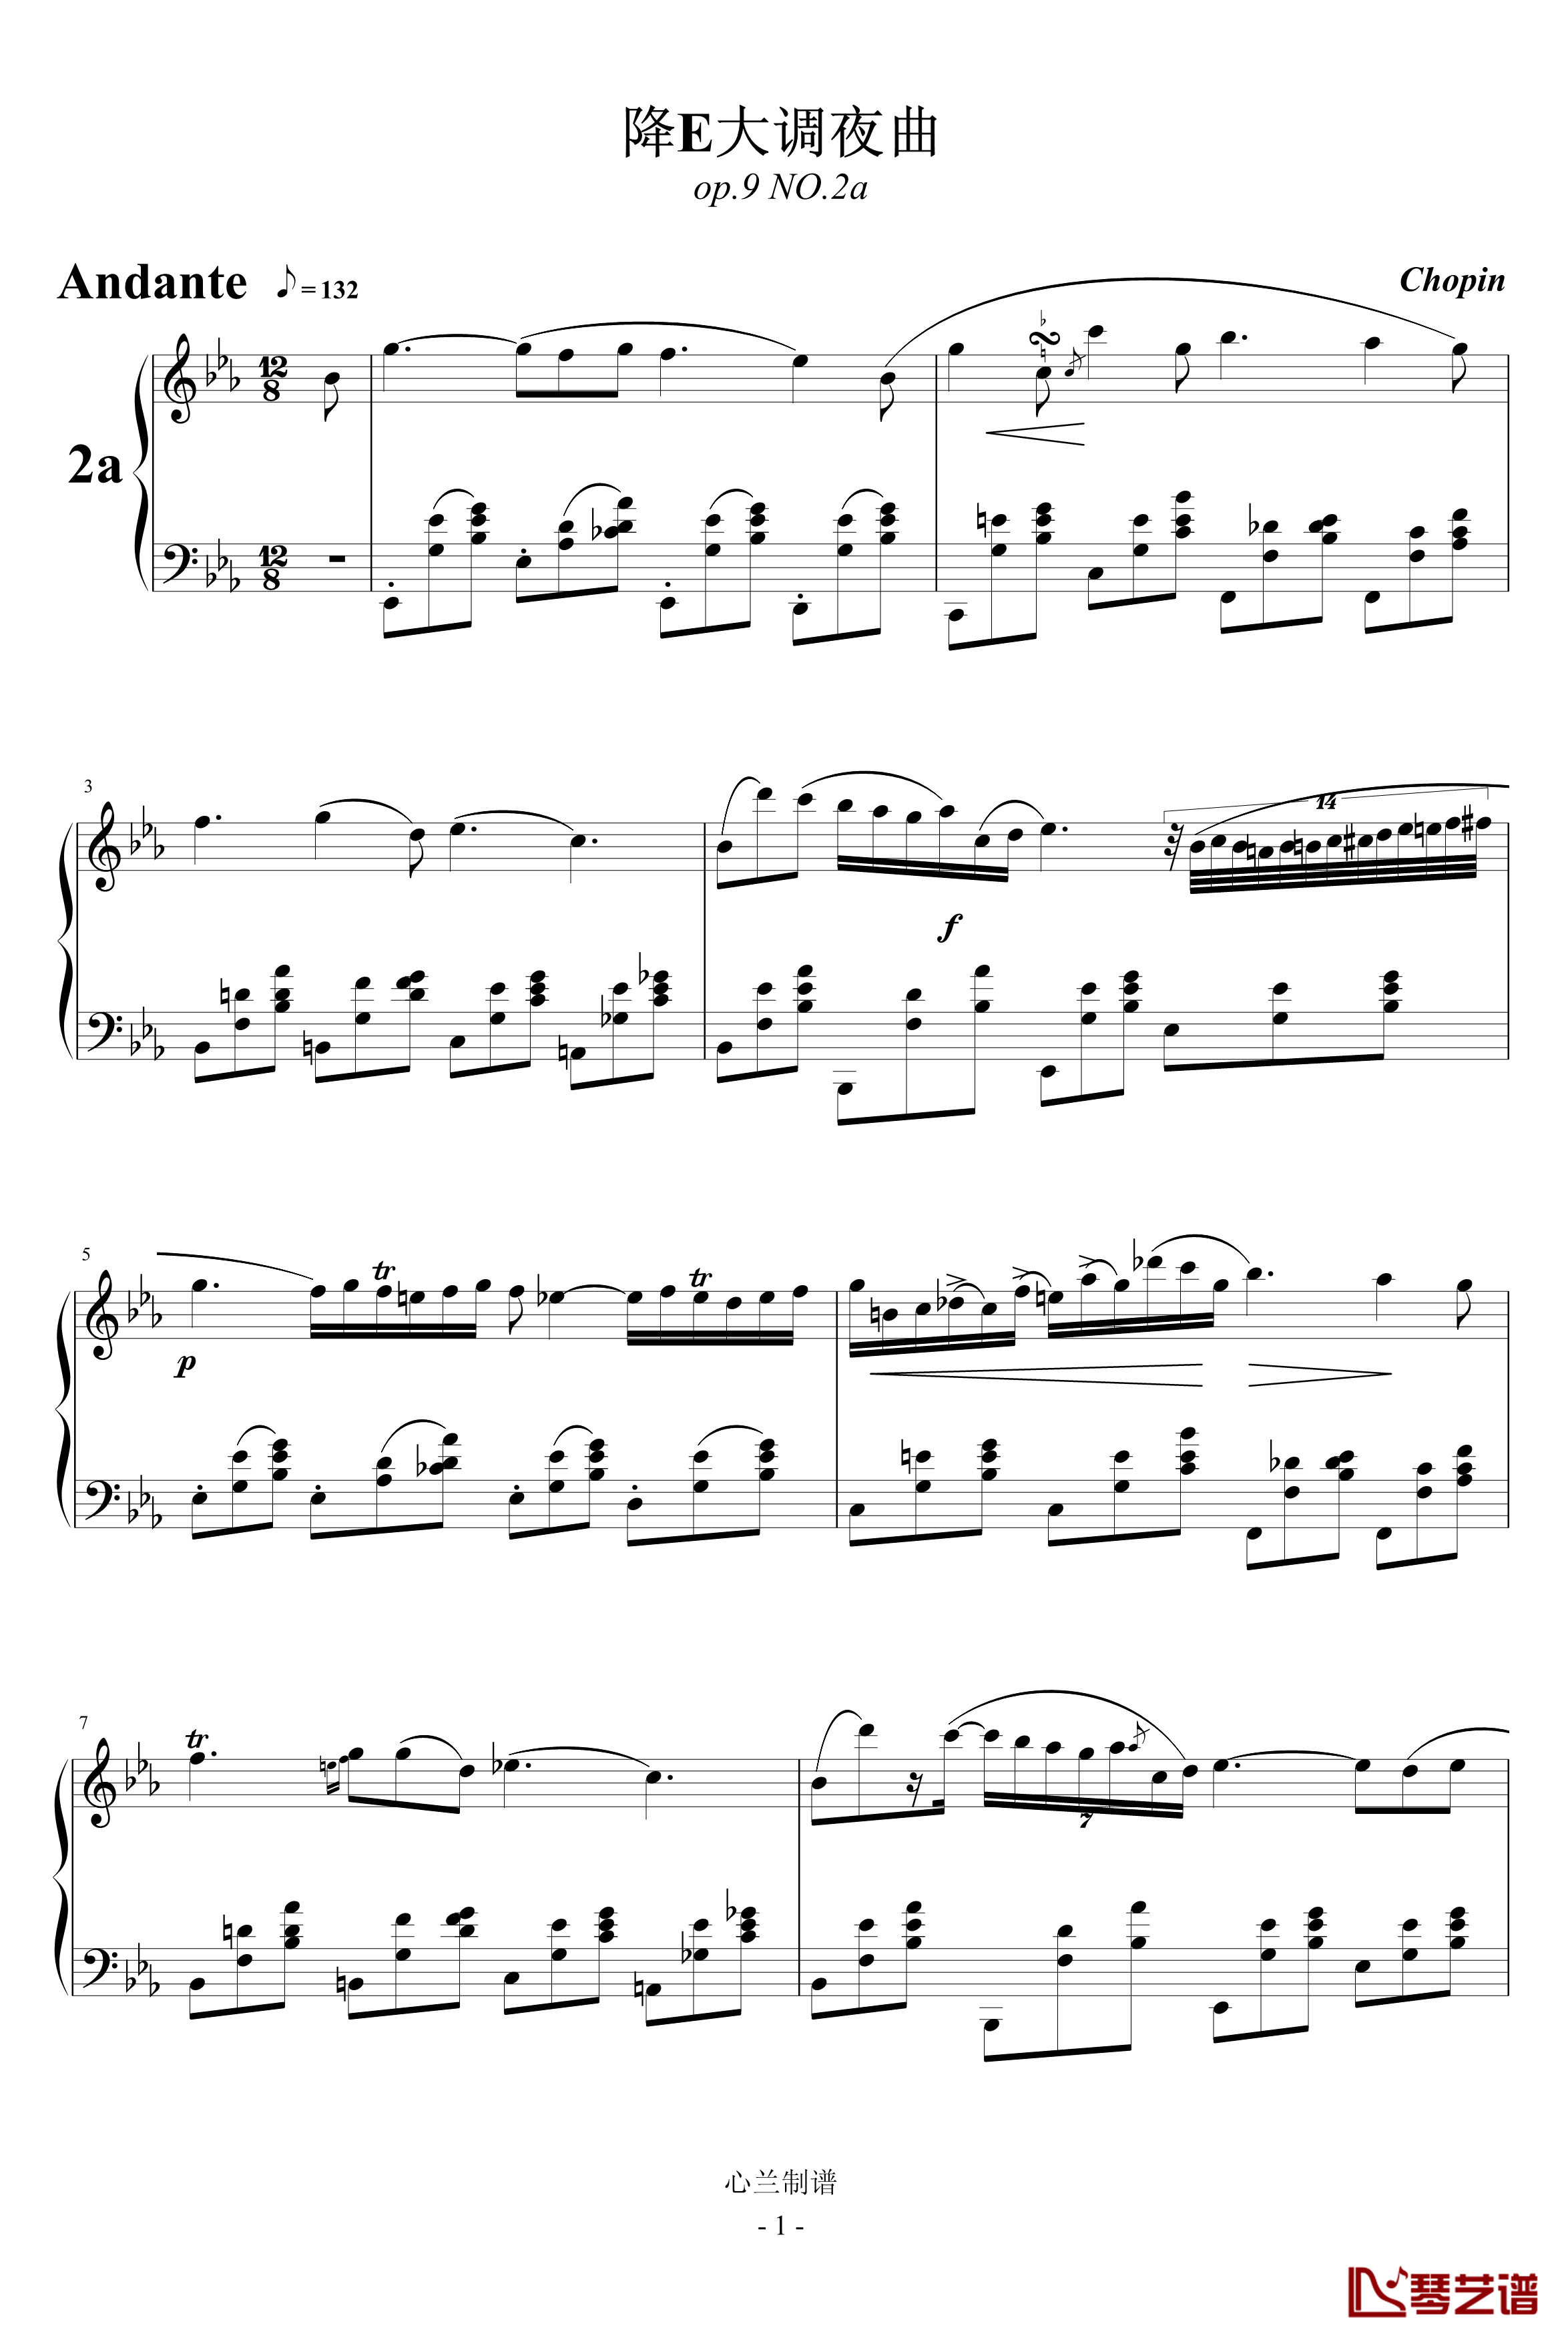 降E大调夜曲钢琴谱-另一个版本-肖邦-chopin1